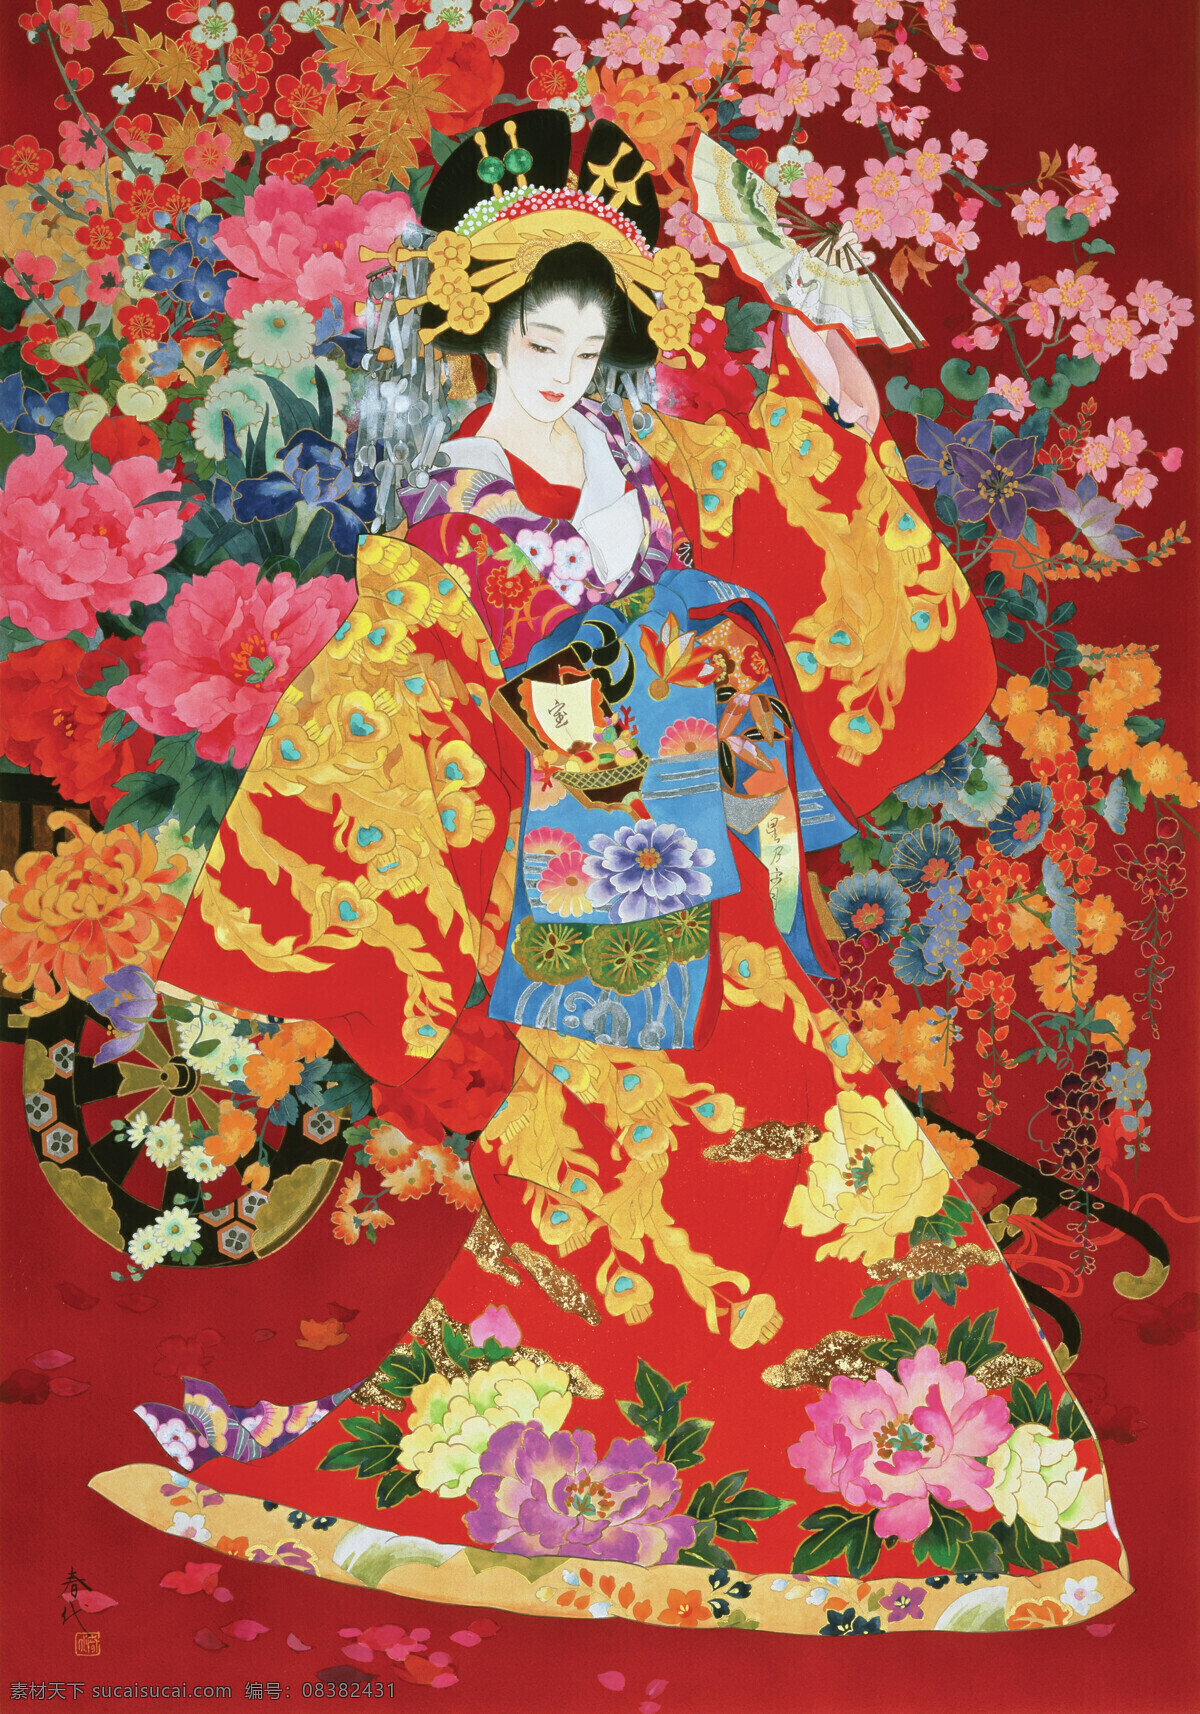 日本艺伎 日本 艺伎 日本绘画 和服 花 文化艺术 传统文化